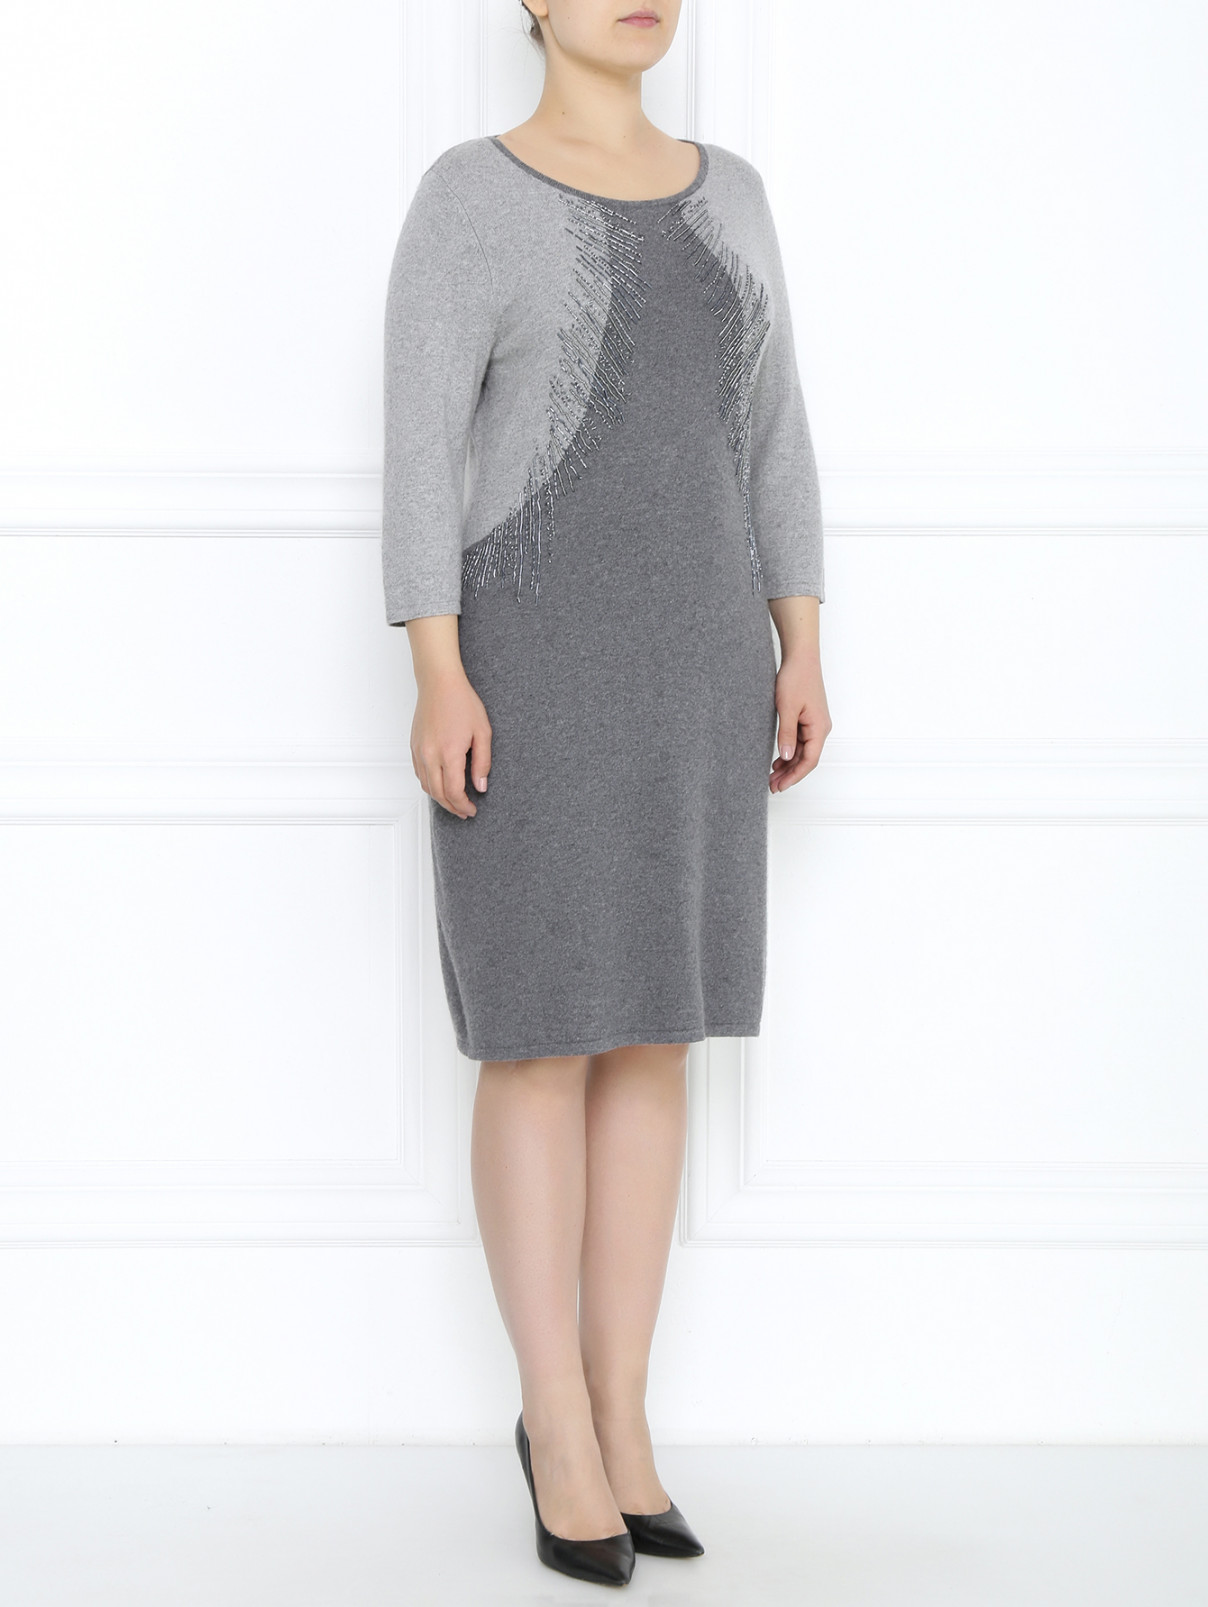 Трикотажное платье с декоративной отделкой Marina Rinaldi  –  Модель Общий вид  – Цвет:  Серый